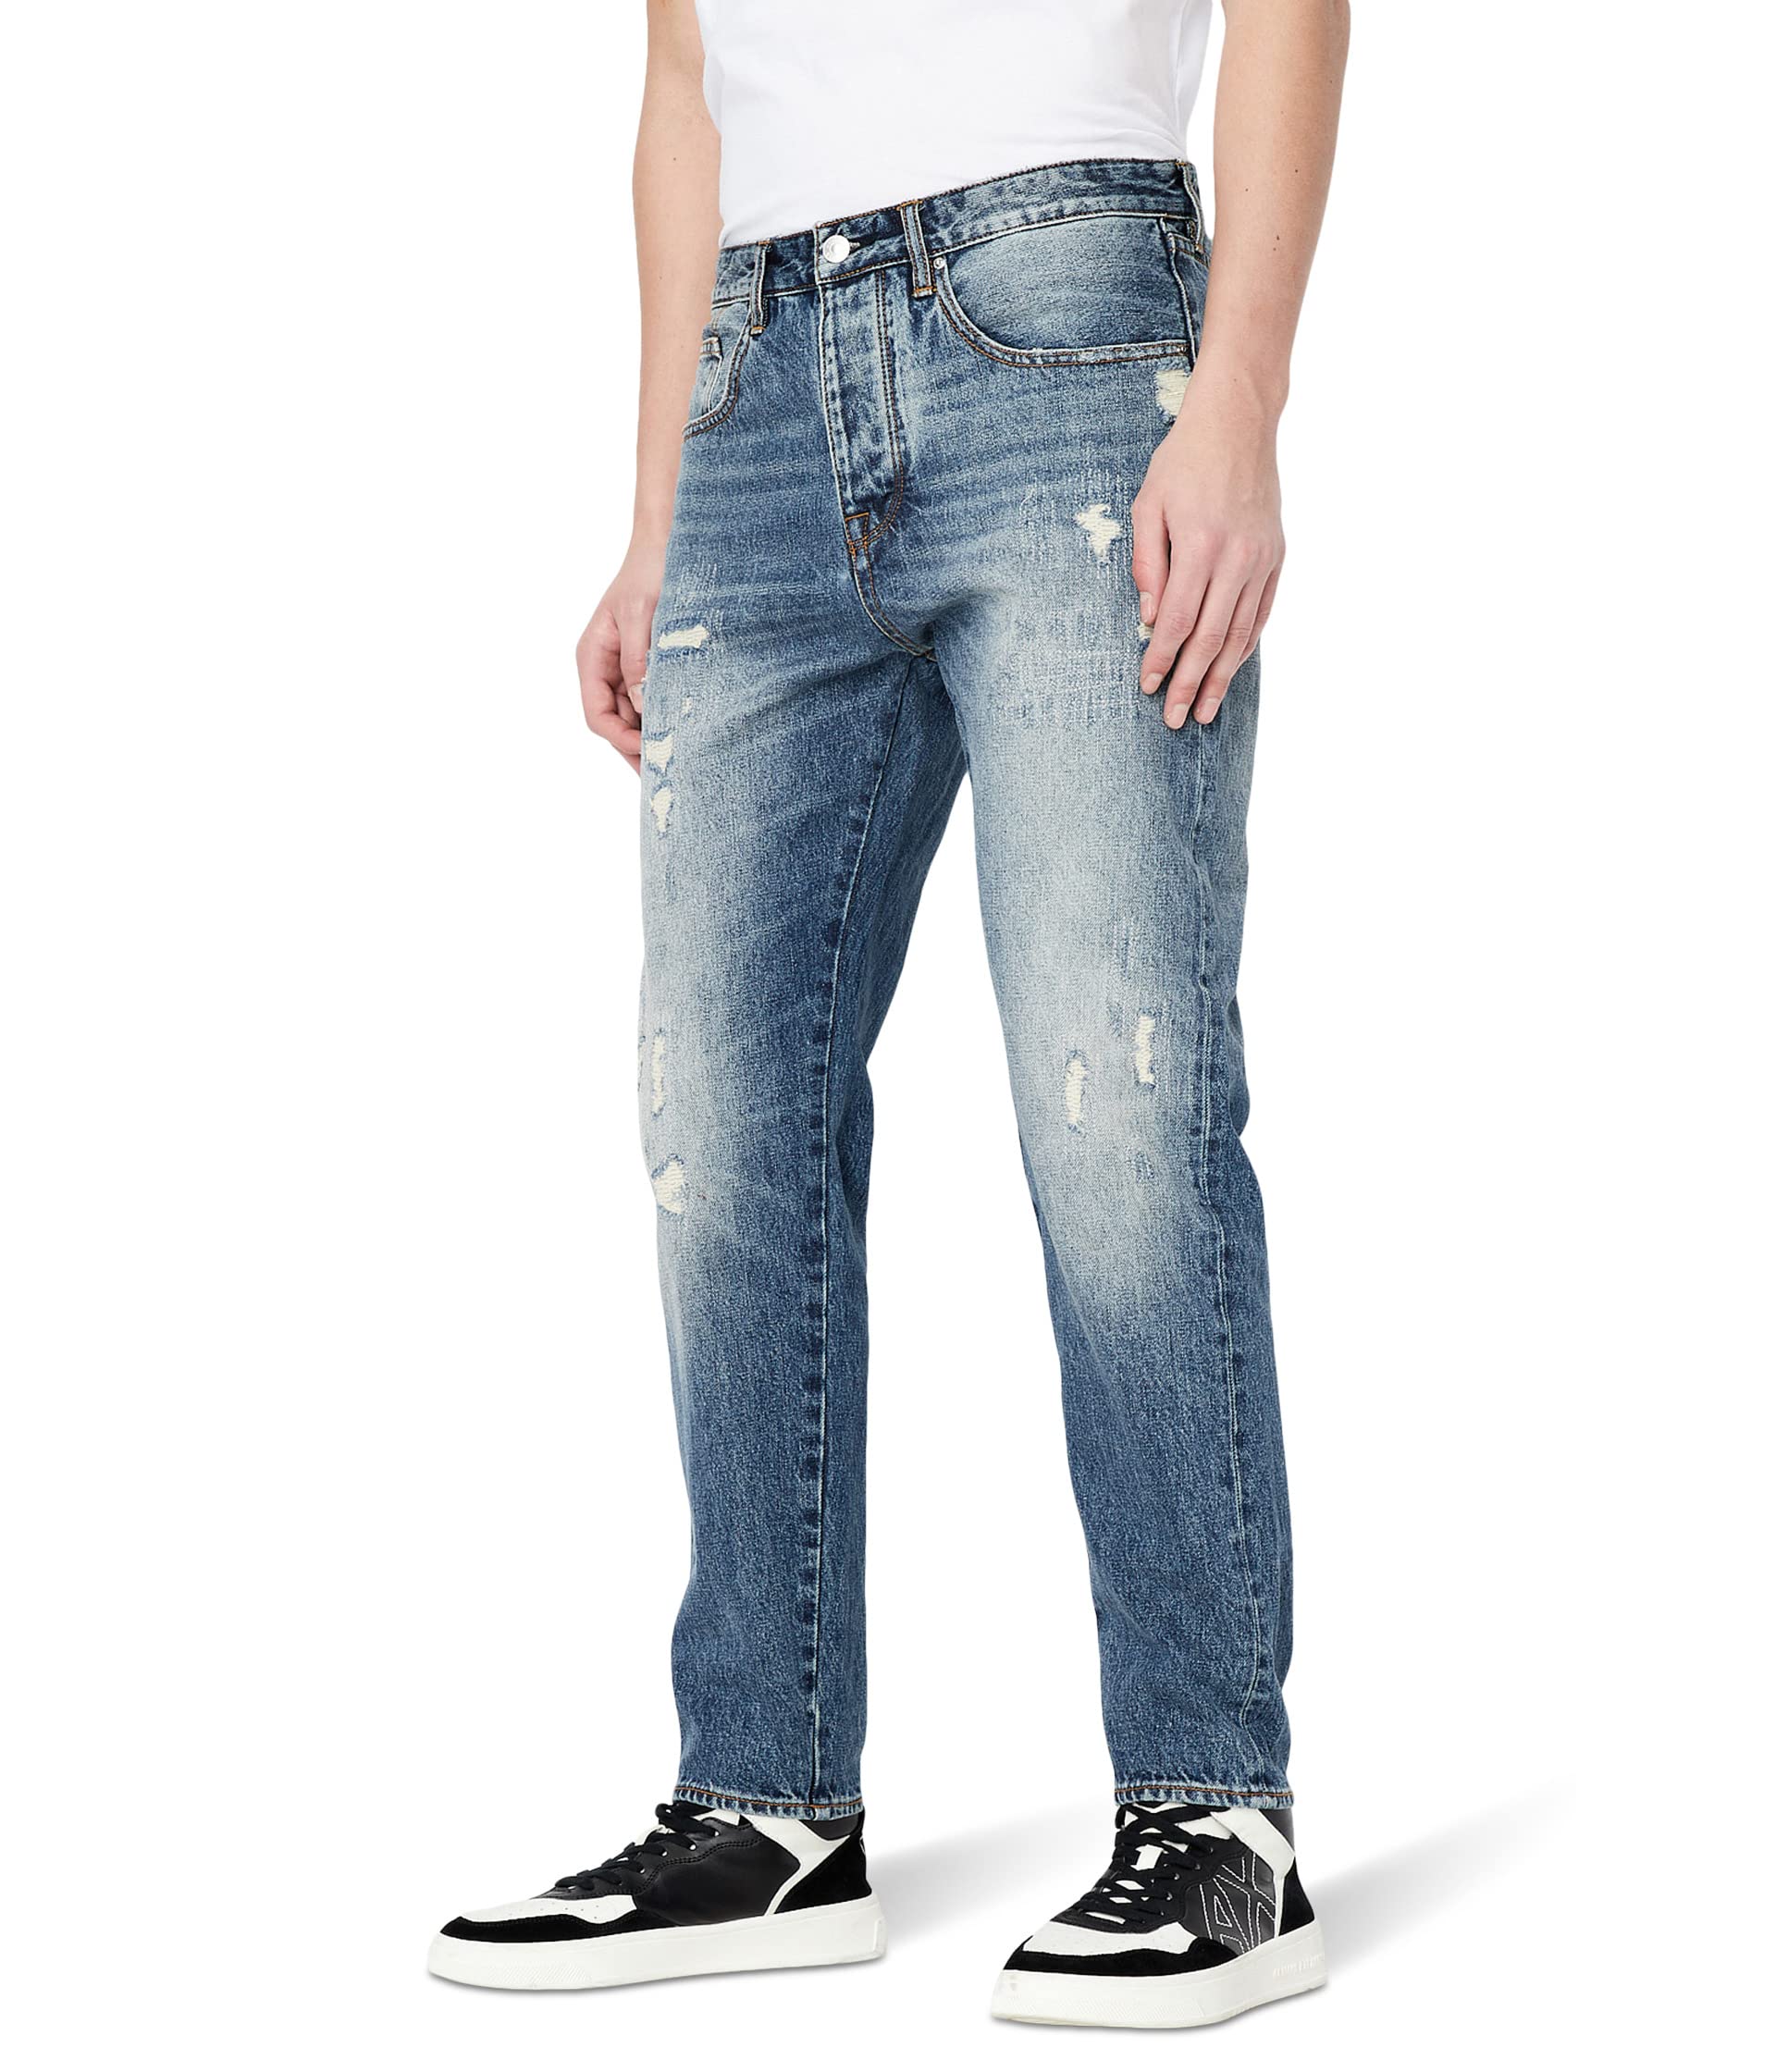 Узкие джинсы с потертостями AX ARMANI EXCHANGE для мужчин AX ARMANI EXCHANGE